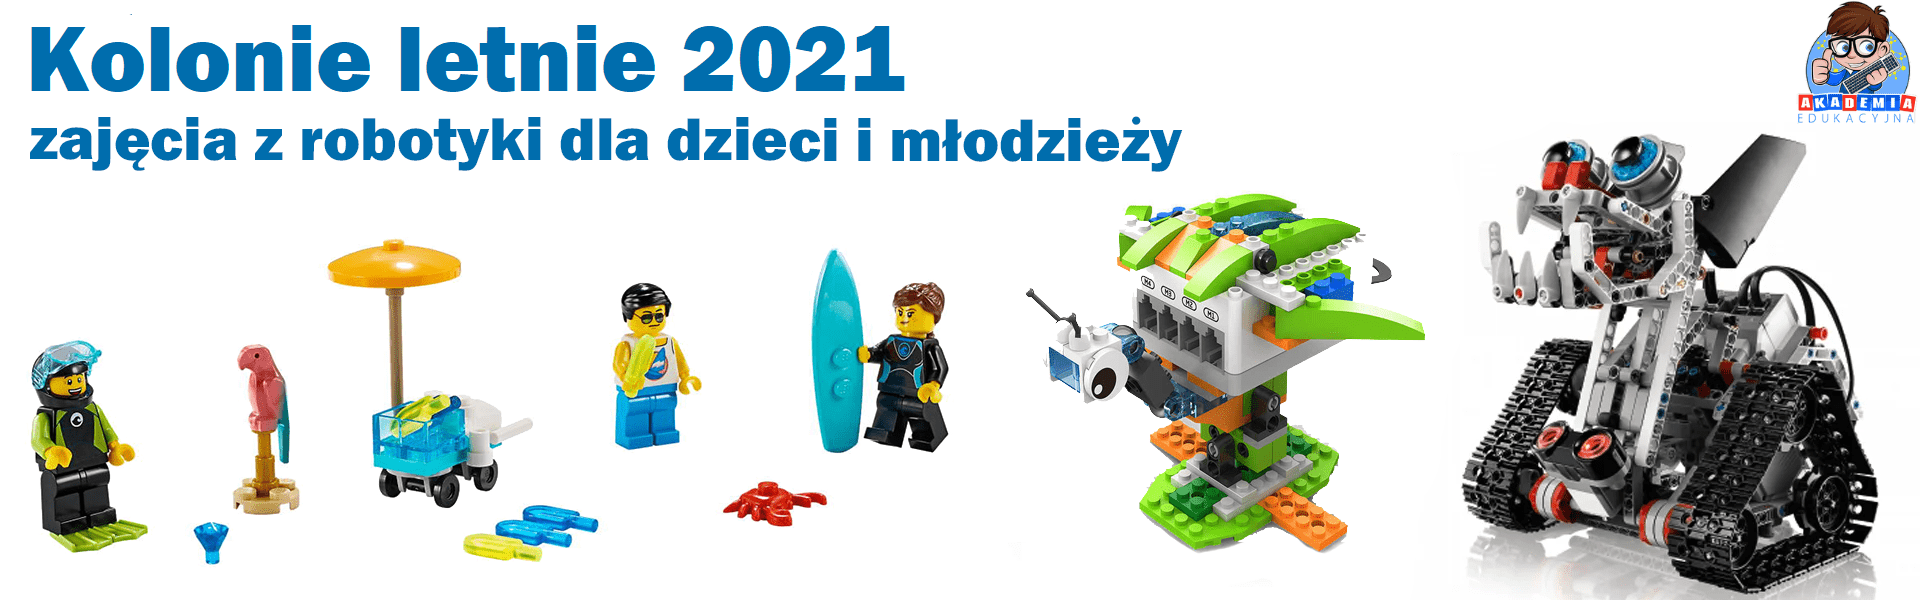 Kolonie letnie 2021